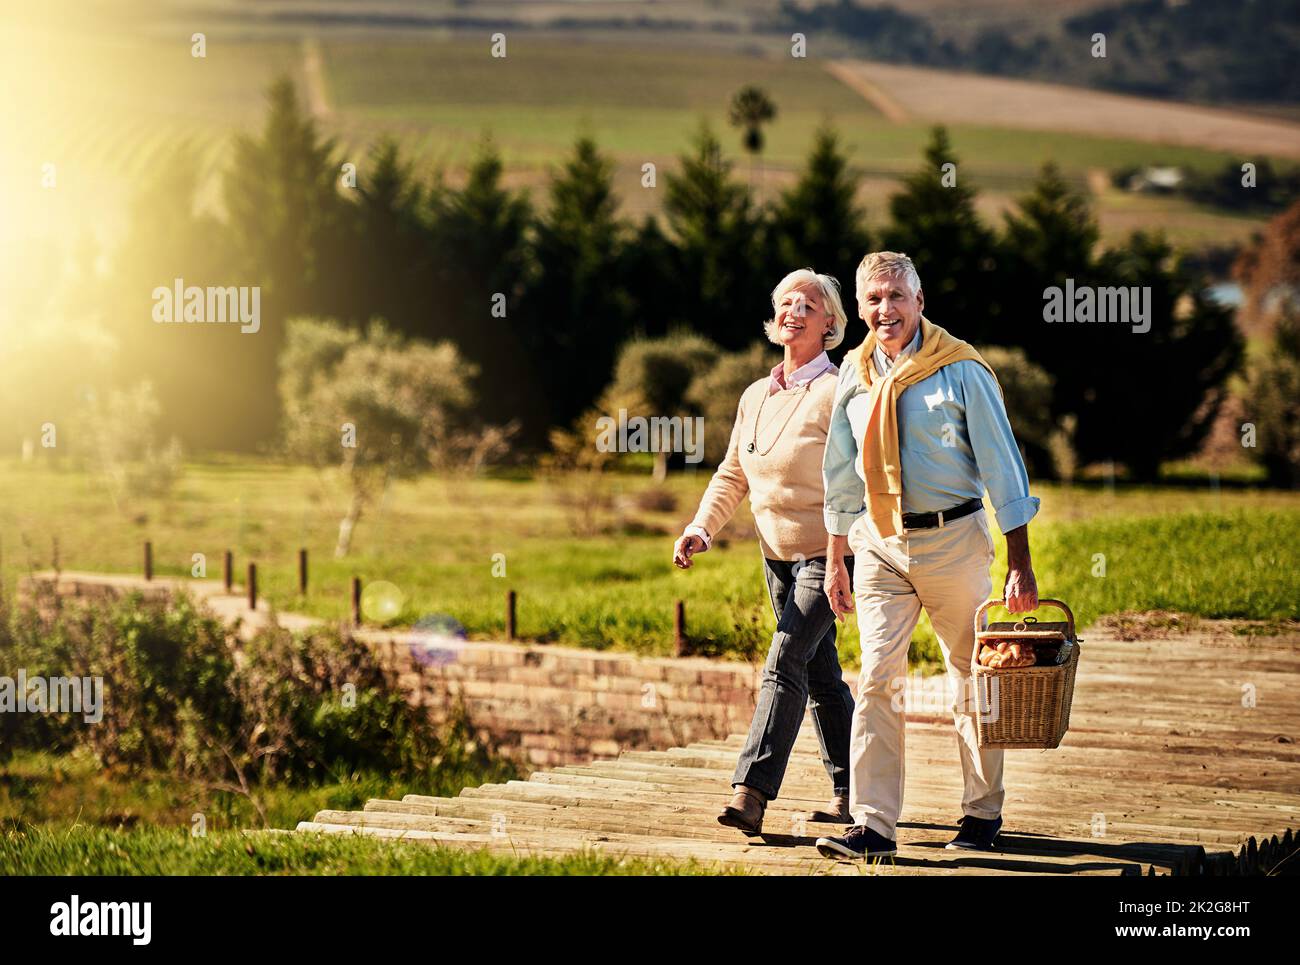 Auf der Suche nach dem perfekten Picknickplatz. Aufnahme eines glücklichen älteren Paares, das nach dem perfekten Picknickplatz draußen sucht. Stockfoto